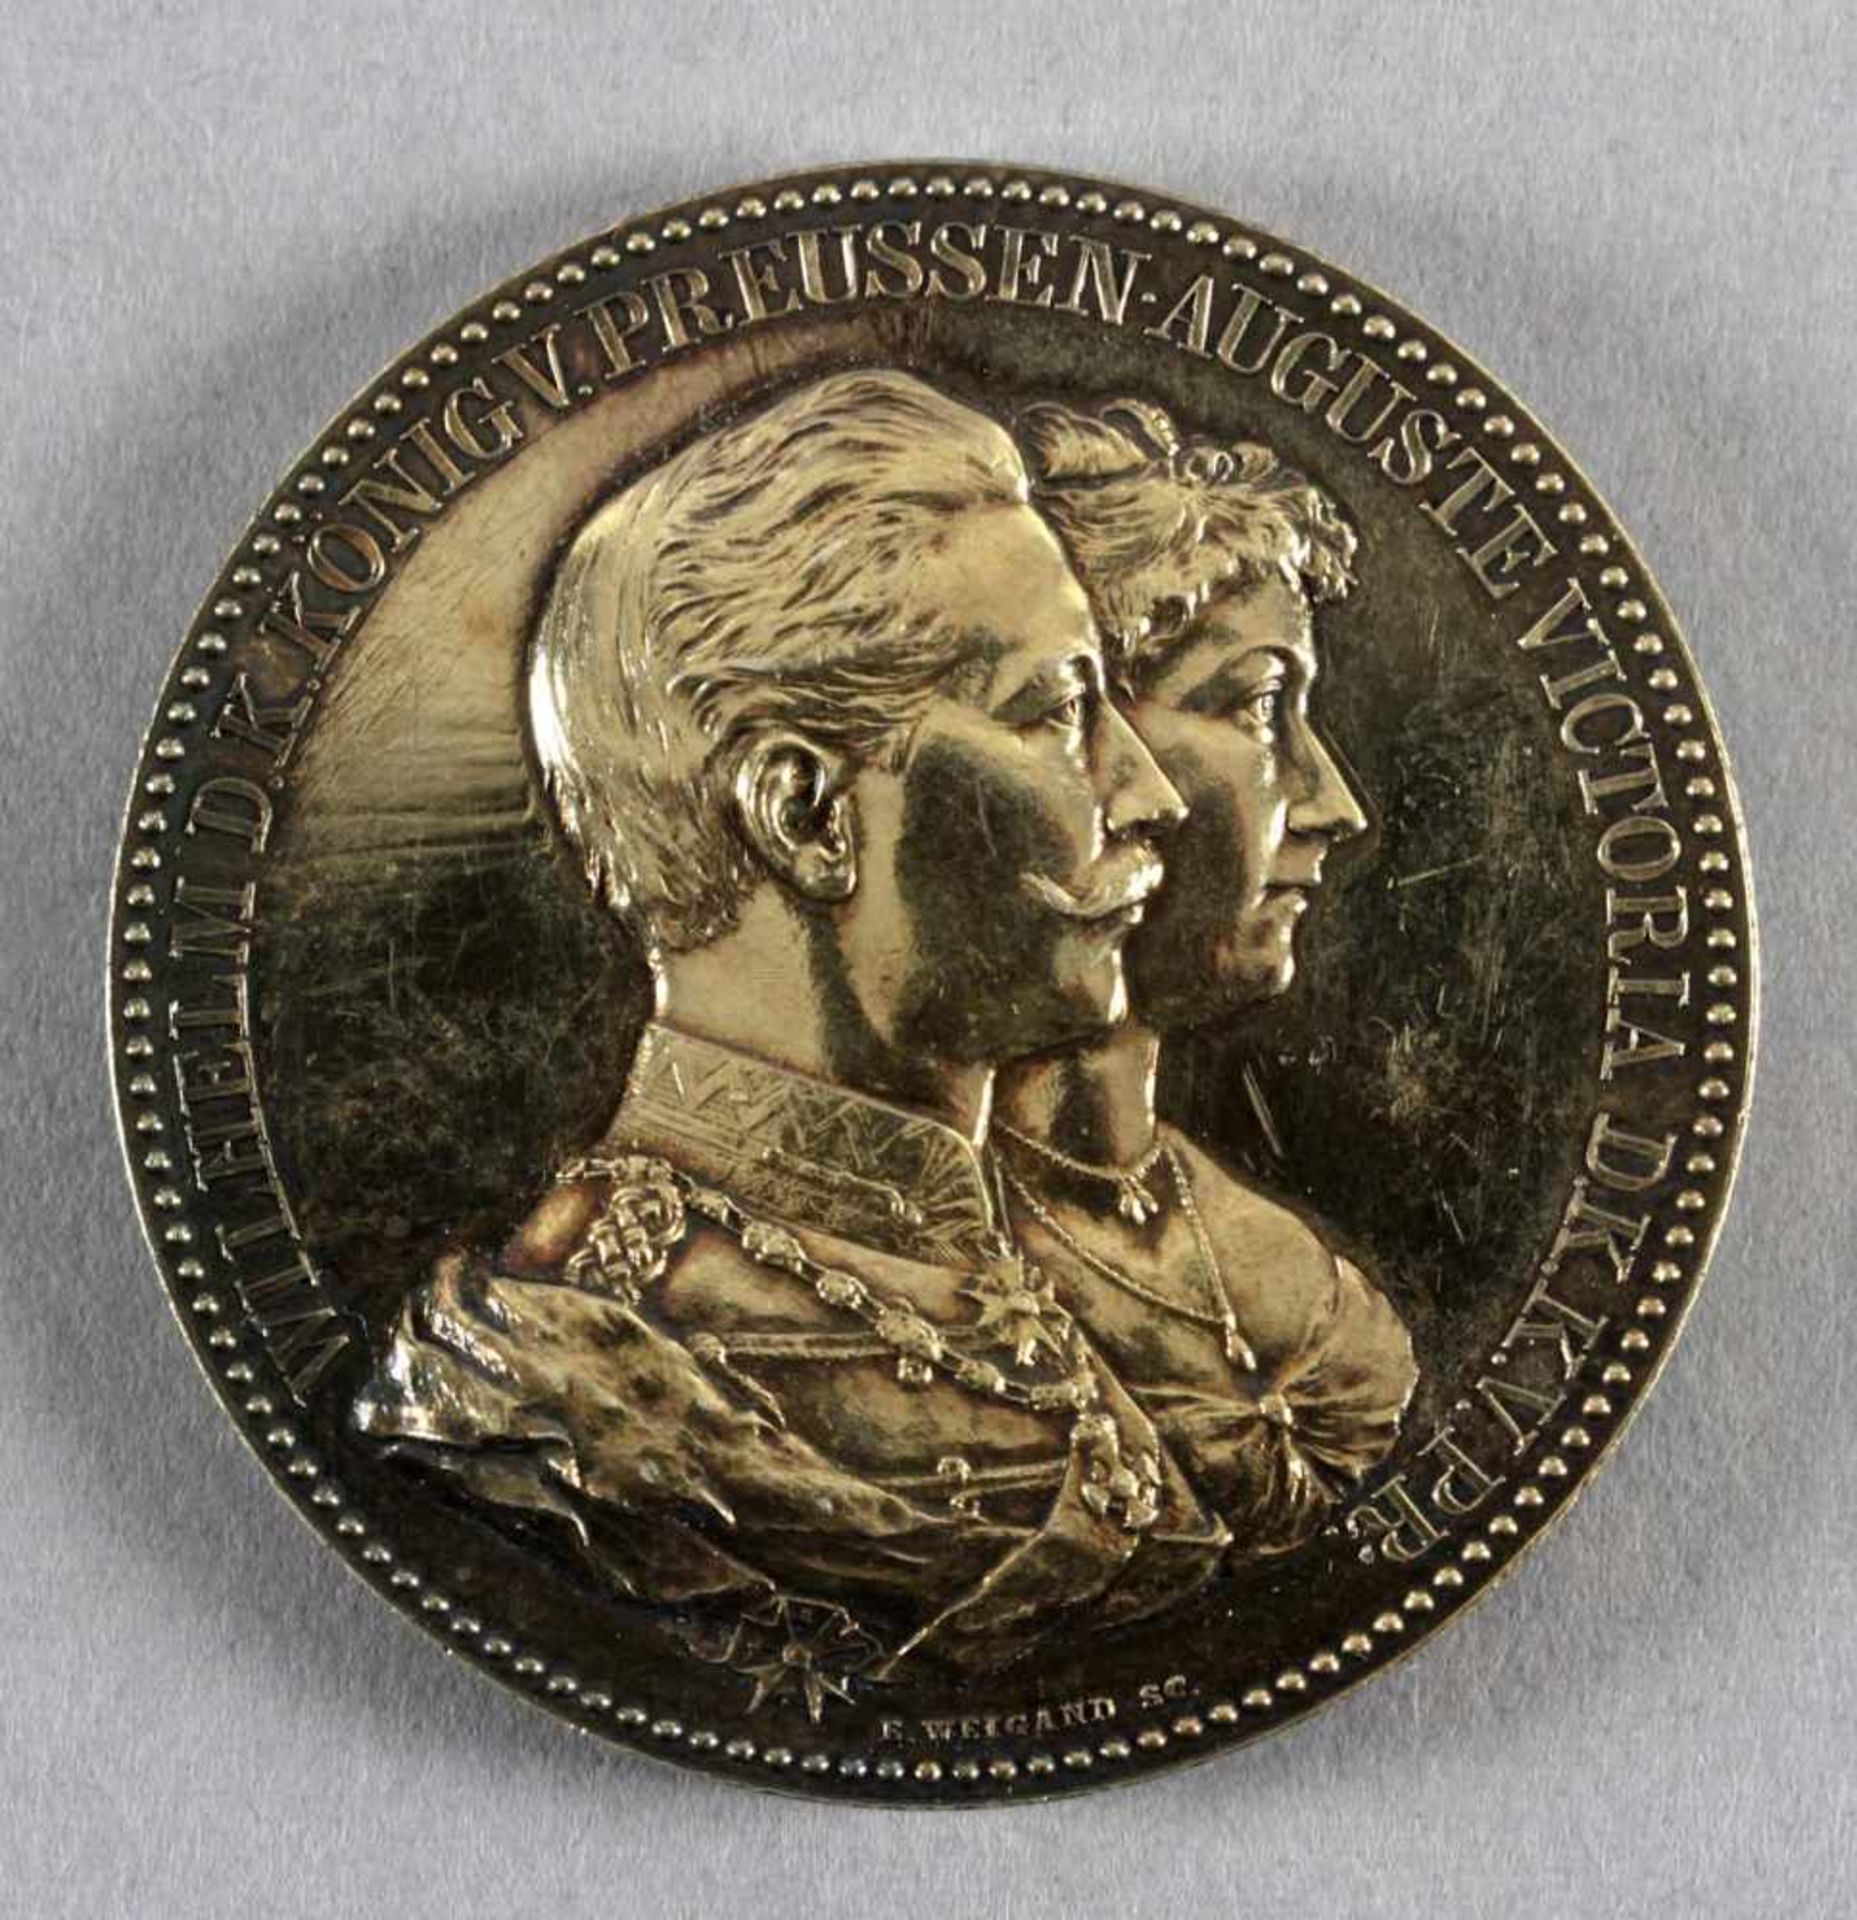 Silbermedaille, Zum Ehejubiläum, Wilhelm II. und Auguste Victoria, 1888